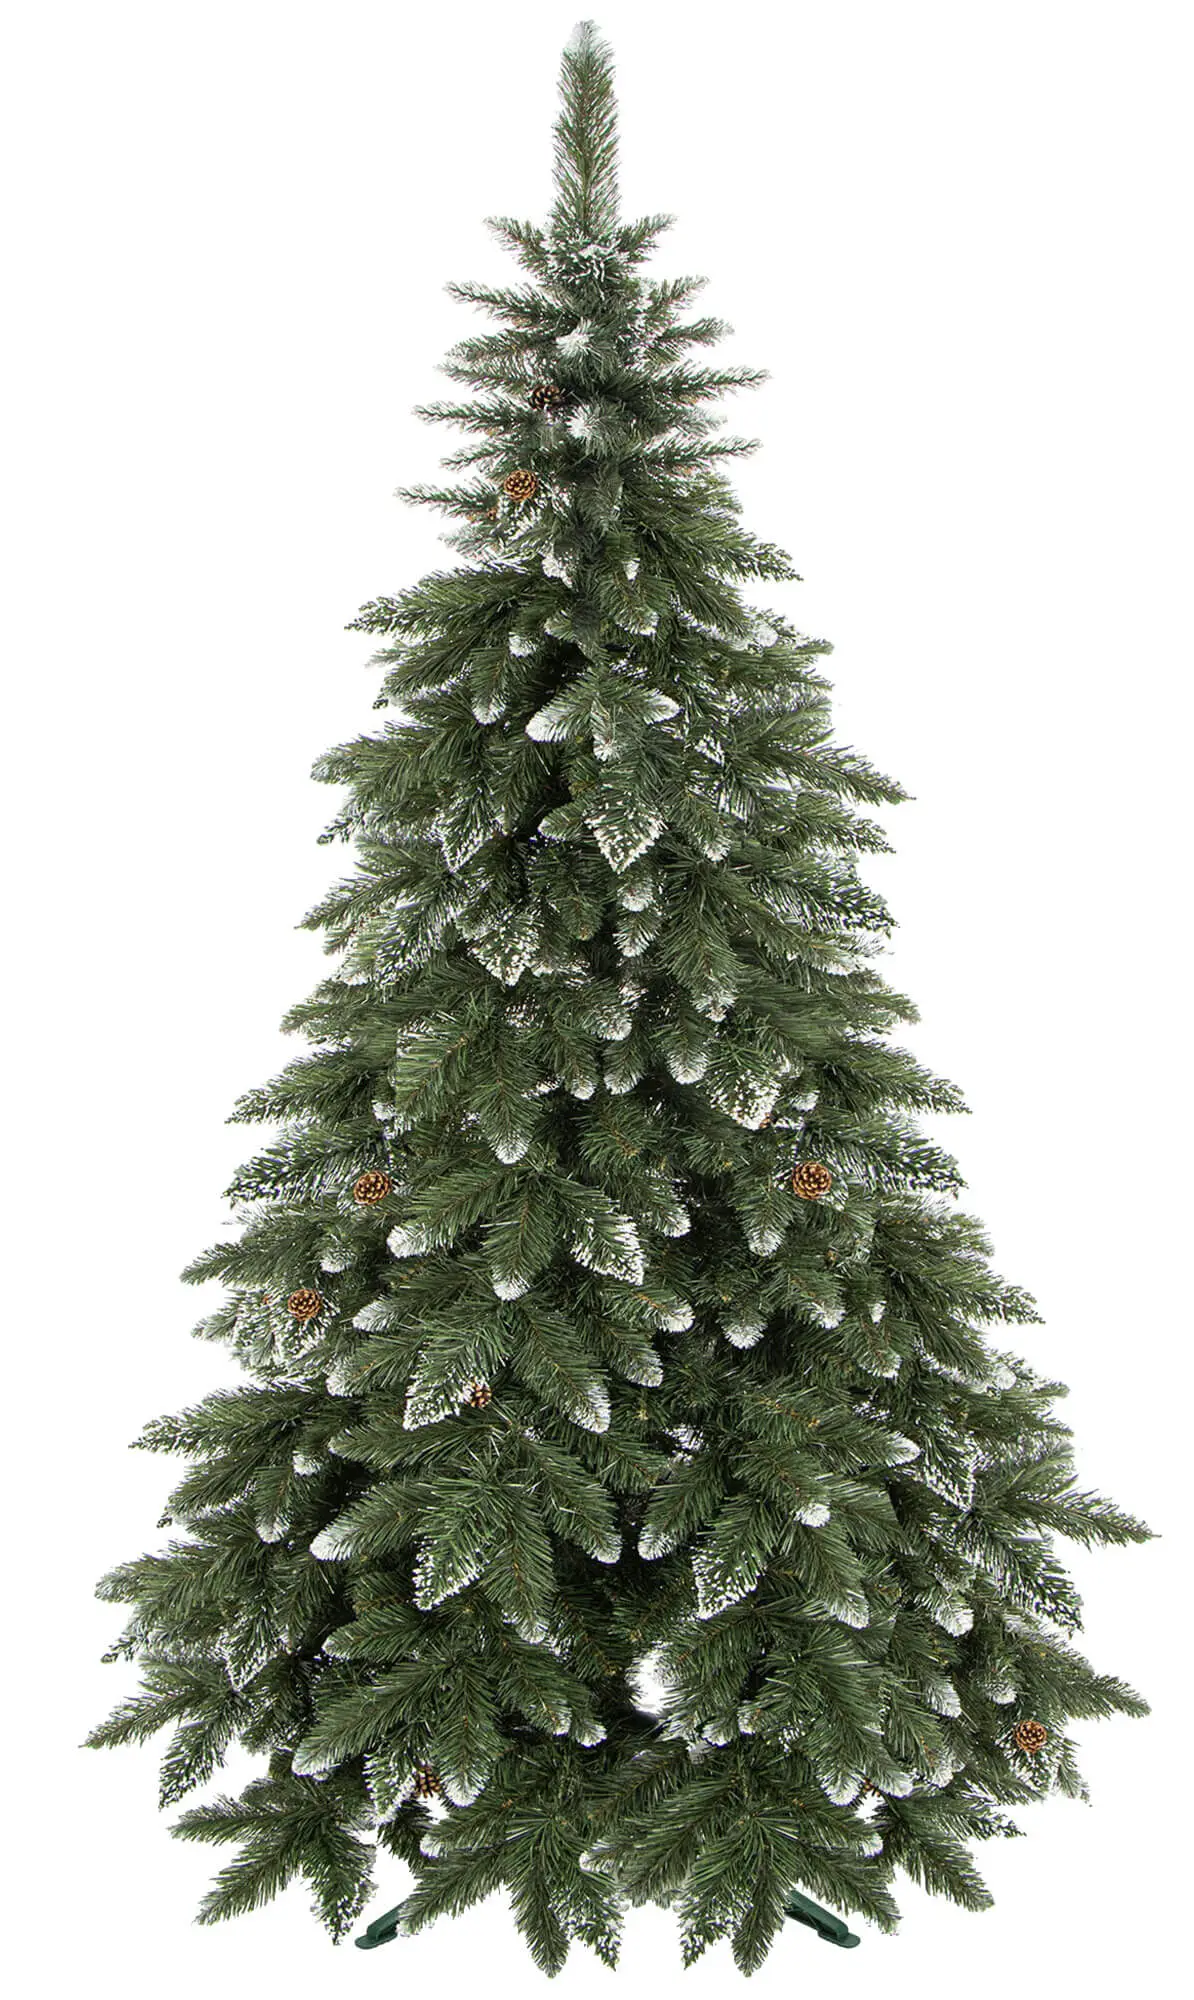 K眉nstlicher 180 cm Weihnachtsbaum